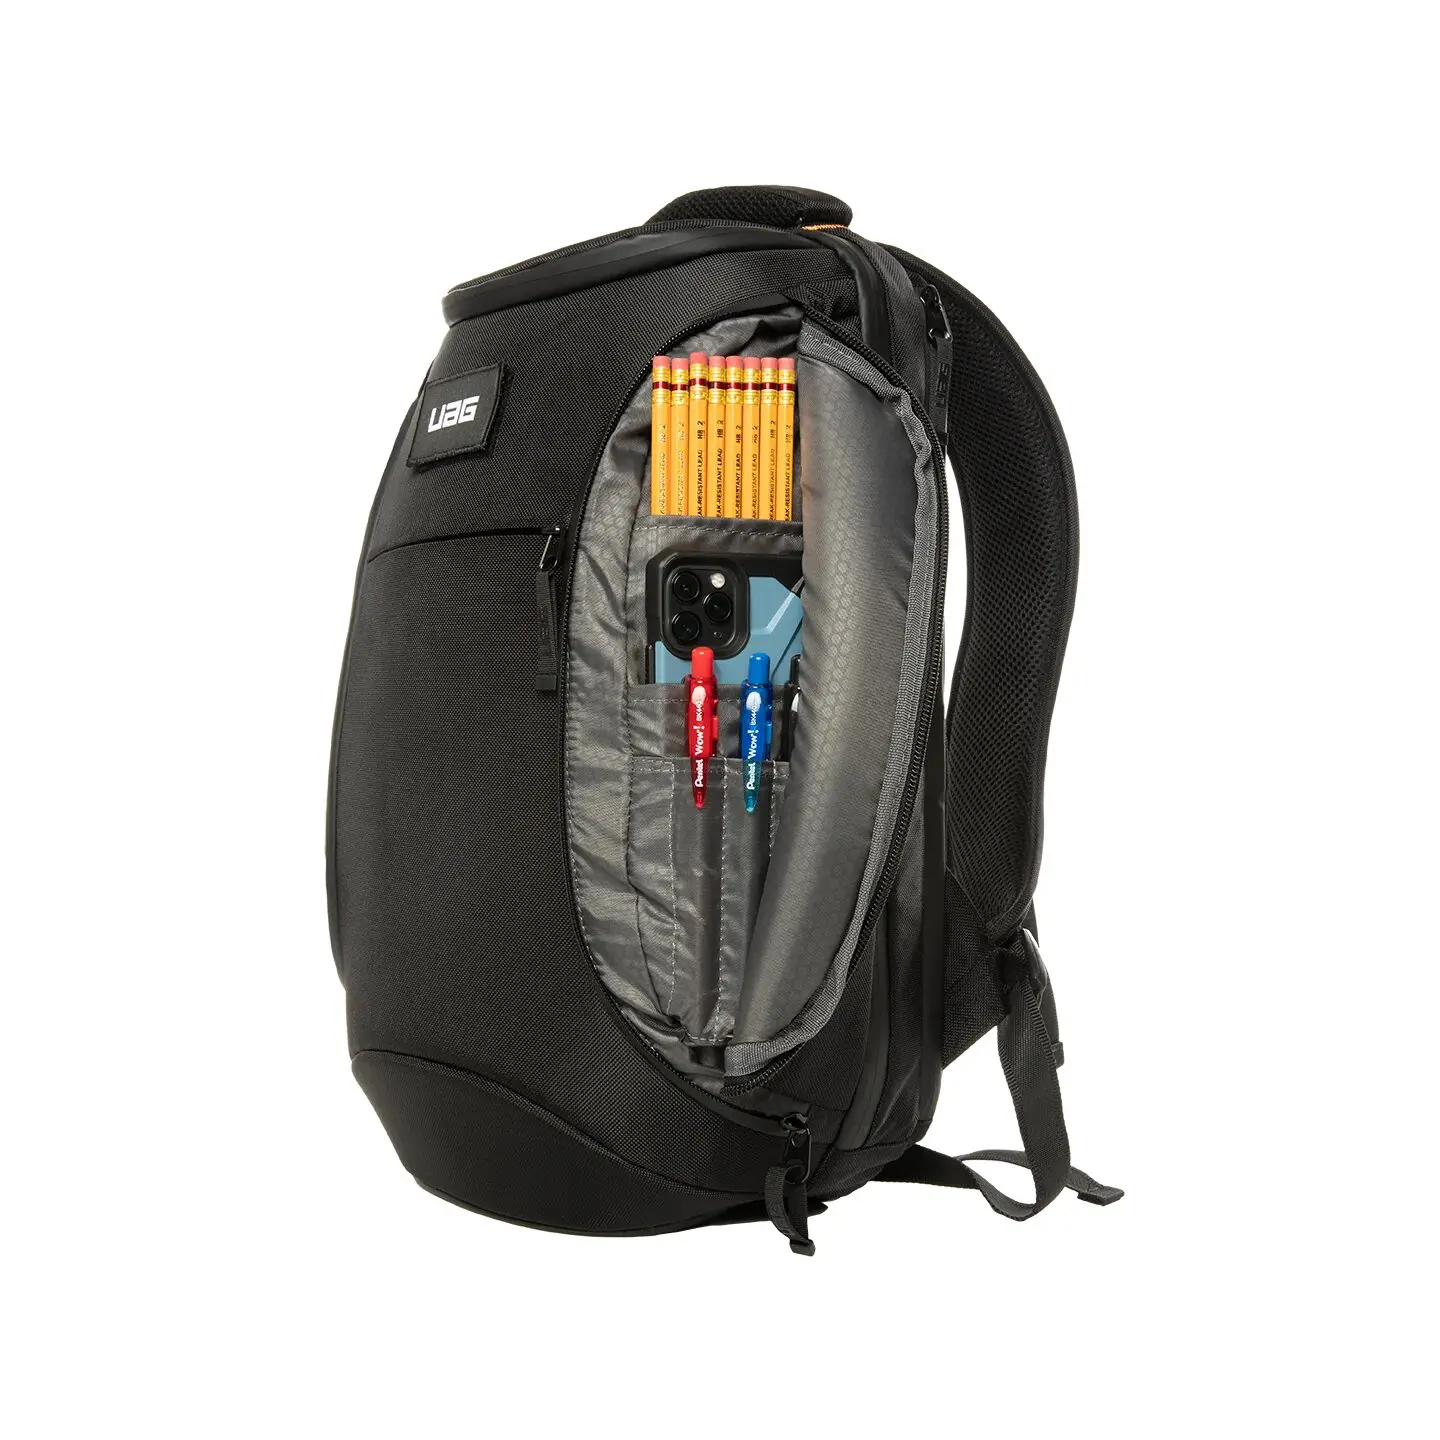 กระเป๋าเป้สะพายหลัง UAG รุ่น Backpack ความจุ 18 ลิตร Compatible - Notebook 13" - Black